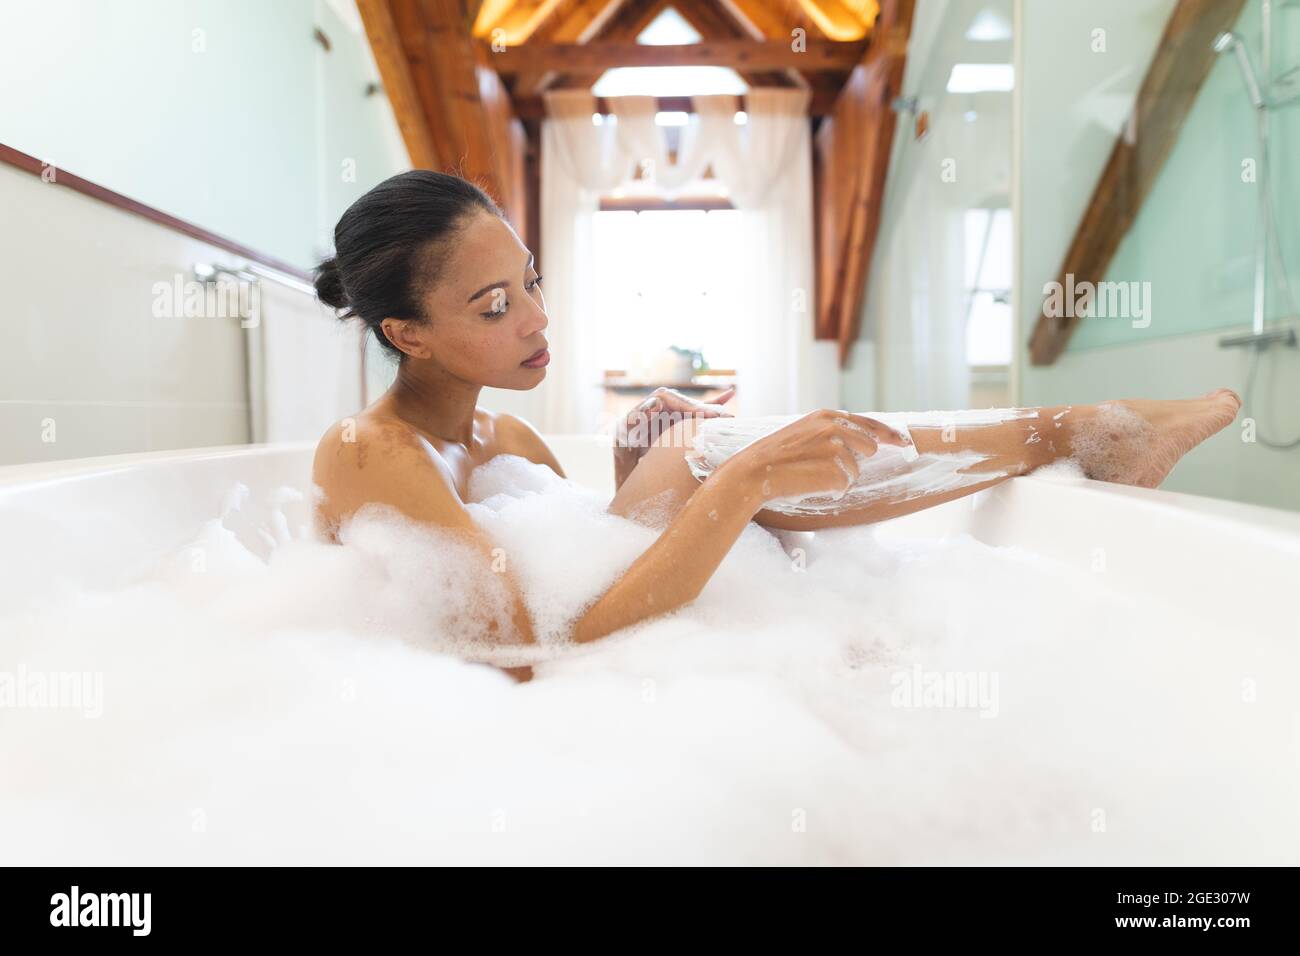 Frau mit gemischter Rasse im Badezimmer, die sich eine Badewanne und die  Beine rasieren ließ Stockfotografie - Alamy